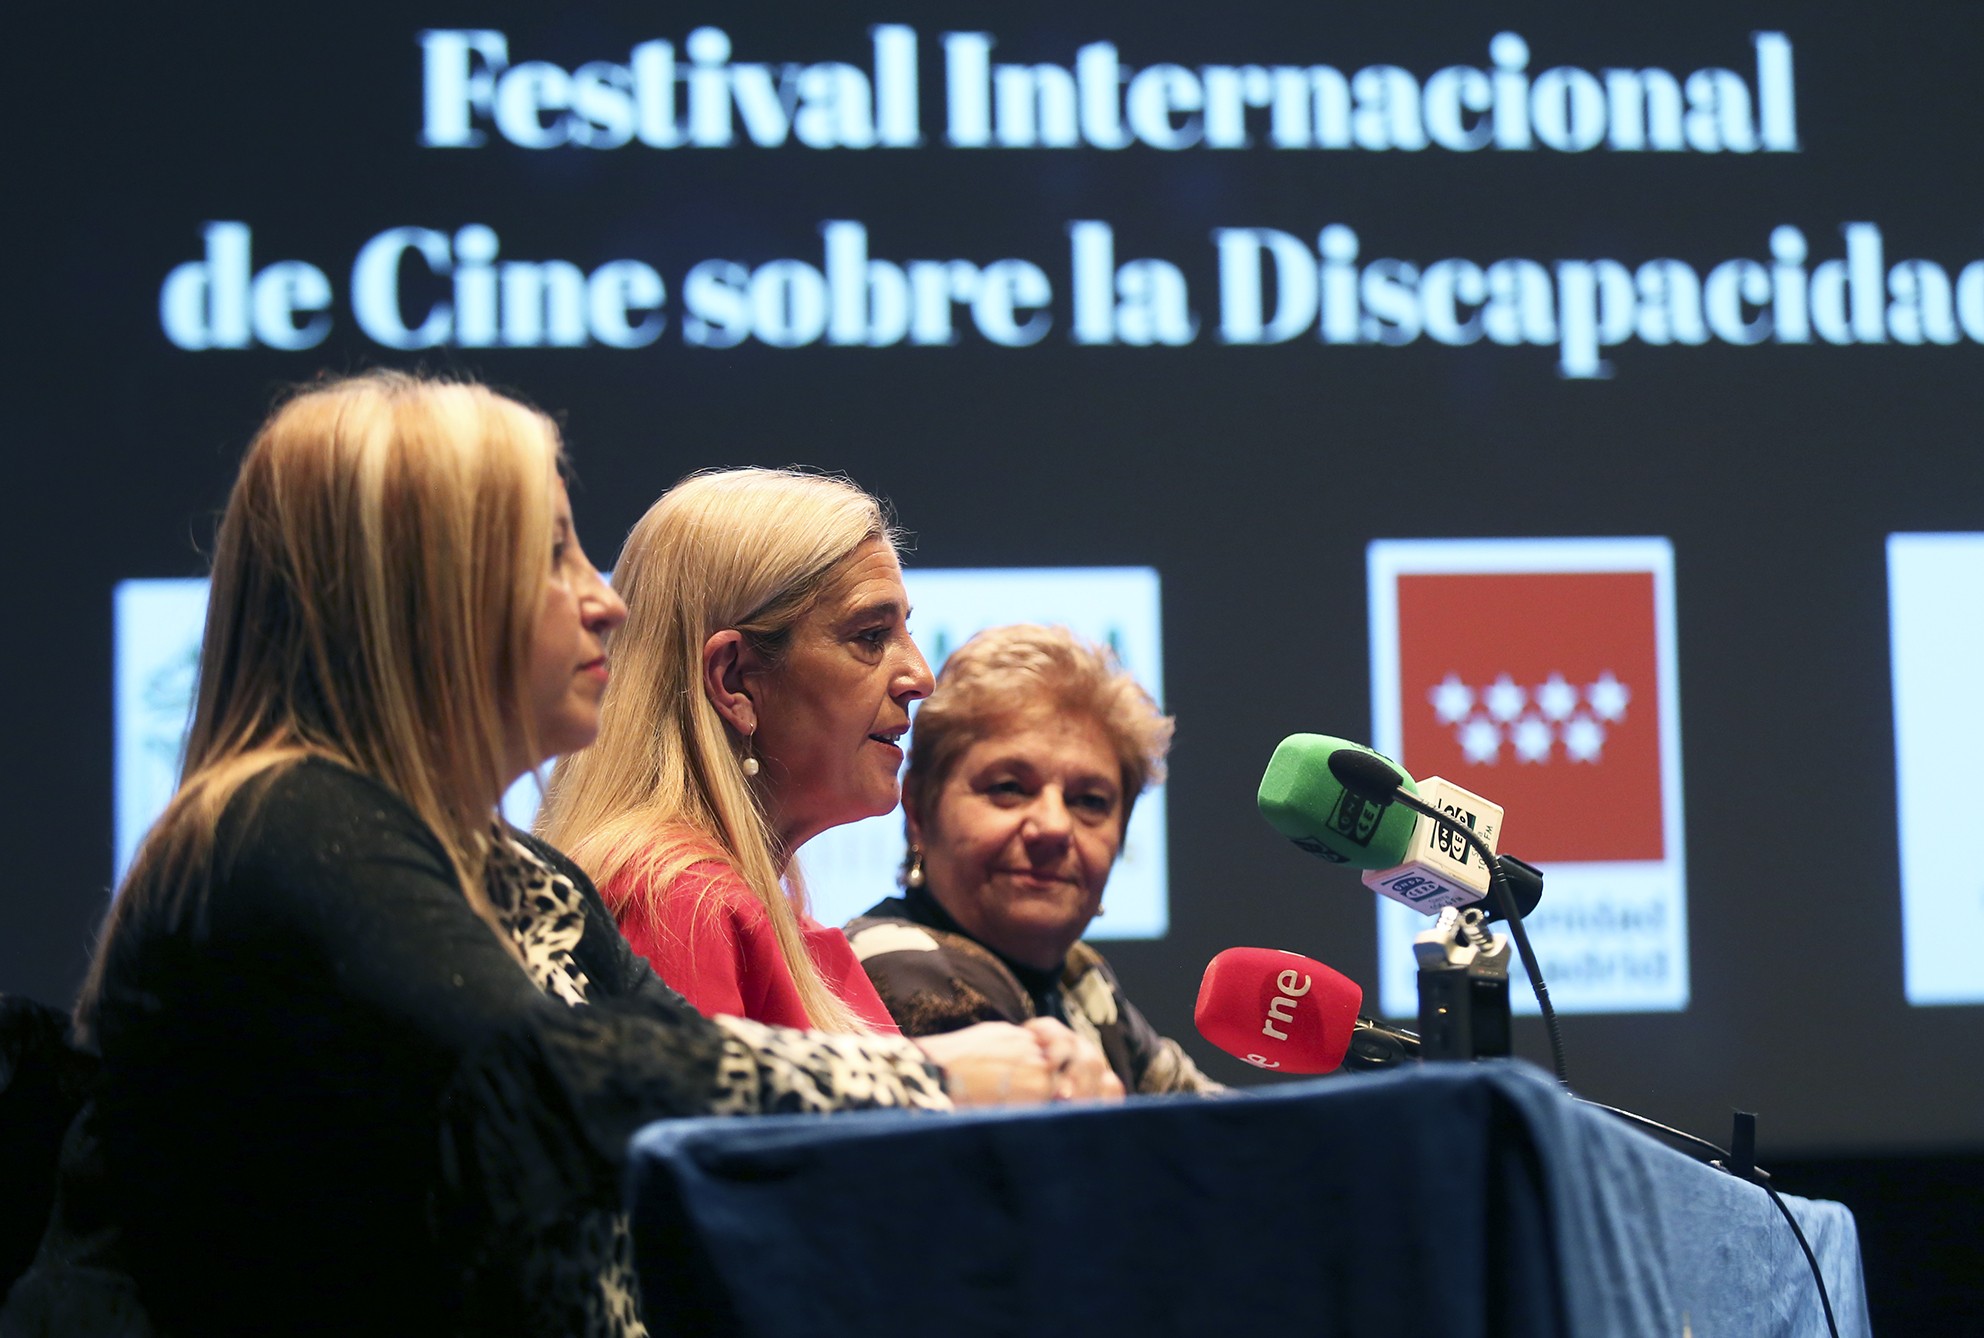 El XII Festival Internacional de Cine sobre la Discapacidad de Collado Villalba